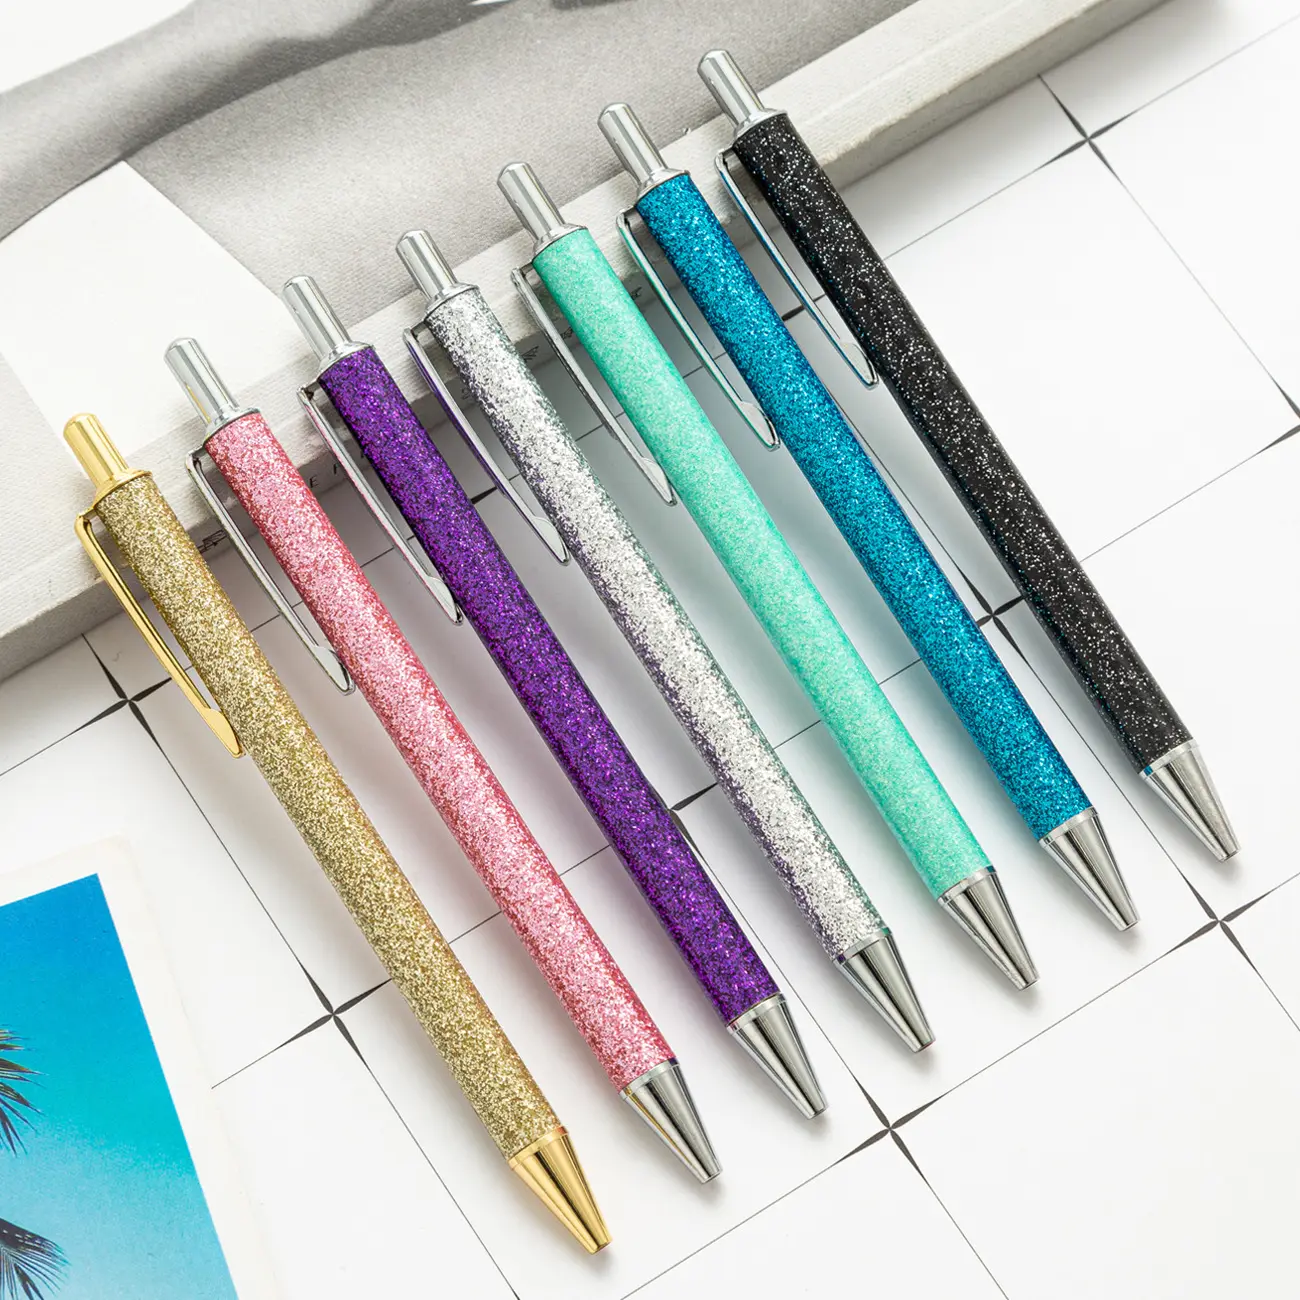 Kadınlar için fantezi kalemler Metal varil geri çekilebilir yazı kalemler ile Pretty sevimli Glitter tükenmez kalemler